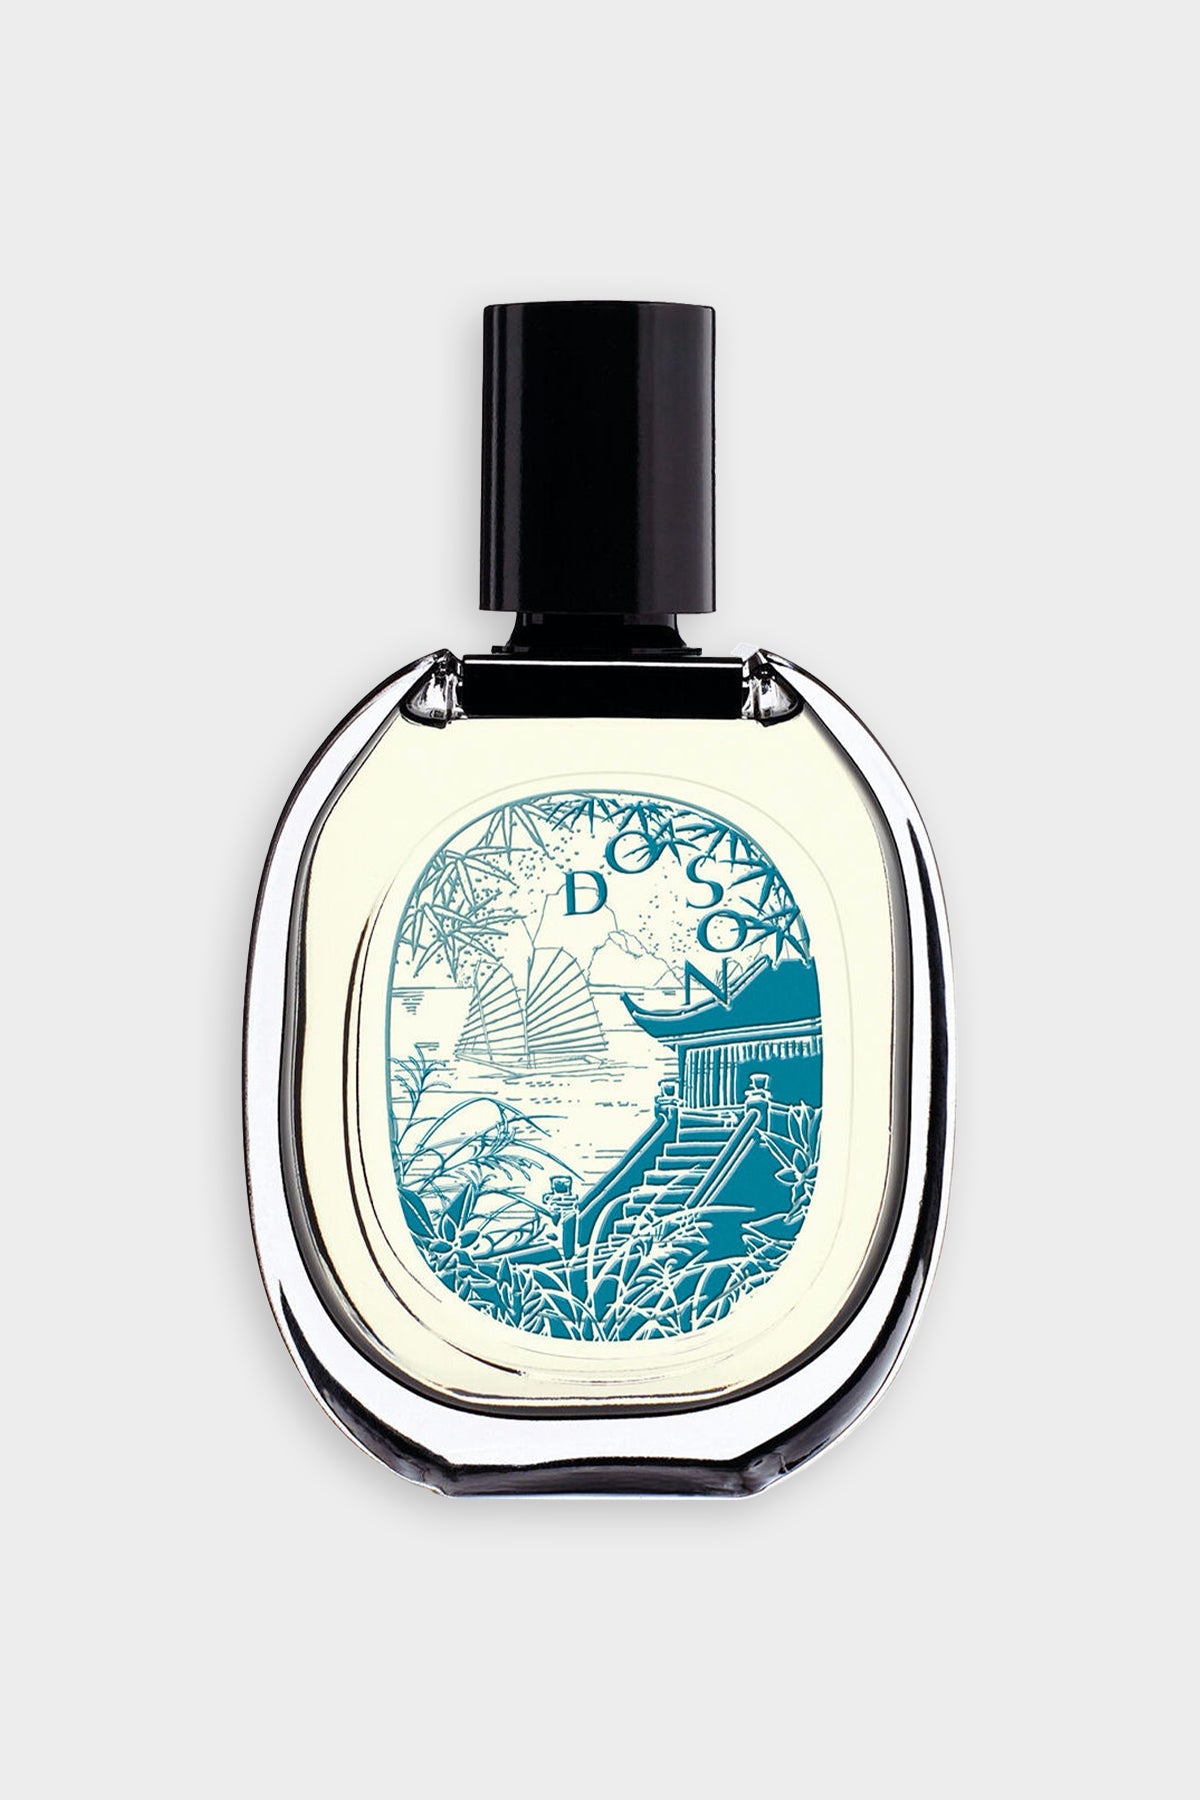 Do Son Eau de Parfum 2.5 fl.oz - Limited Edition - shop-olivia.com